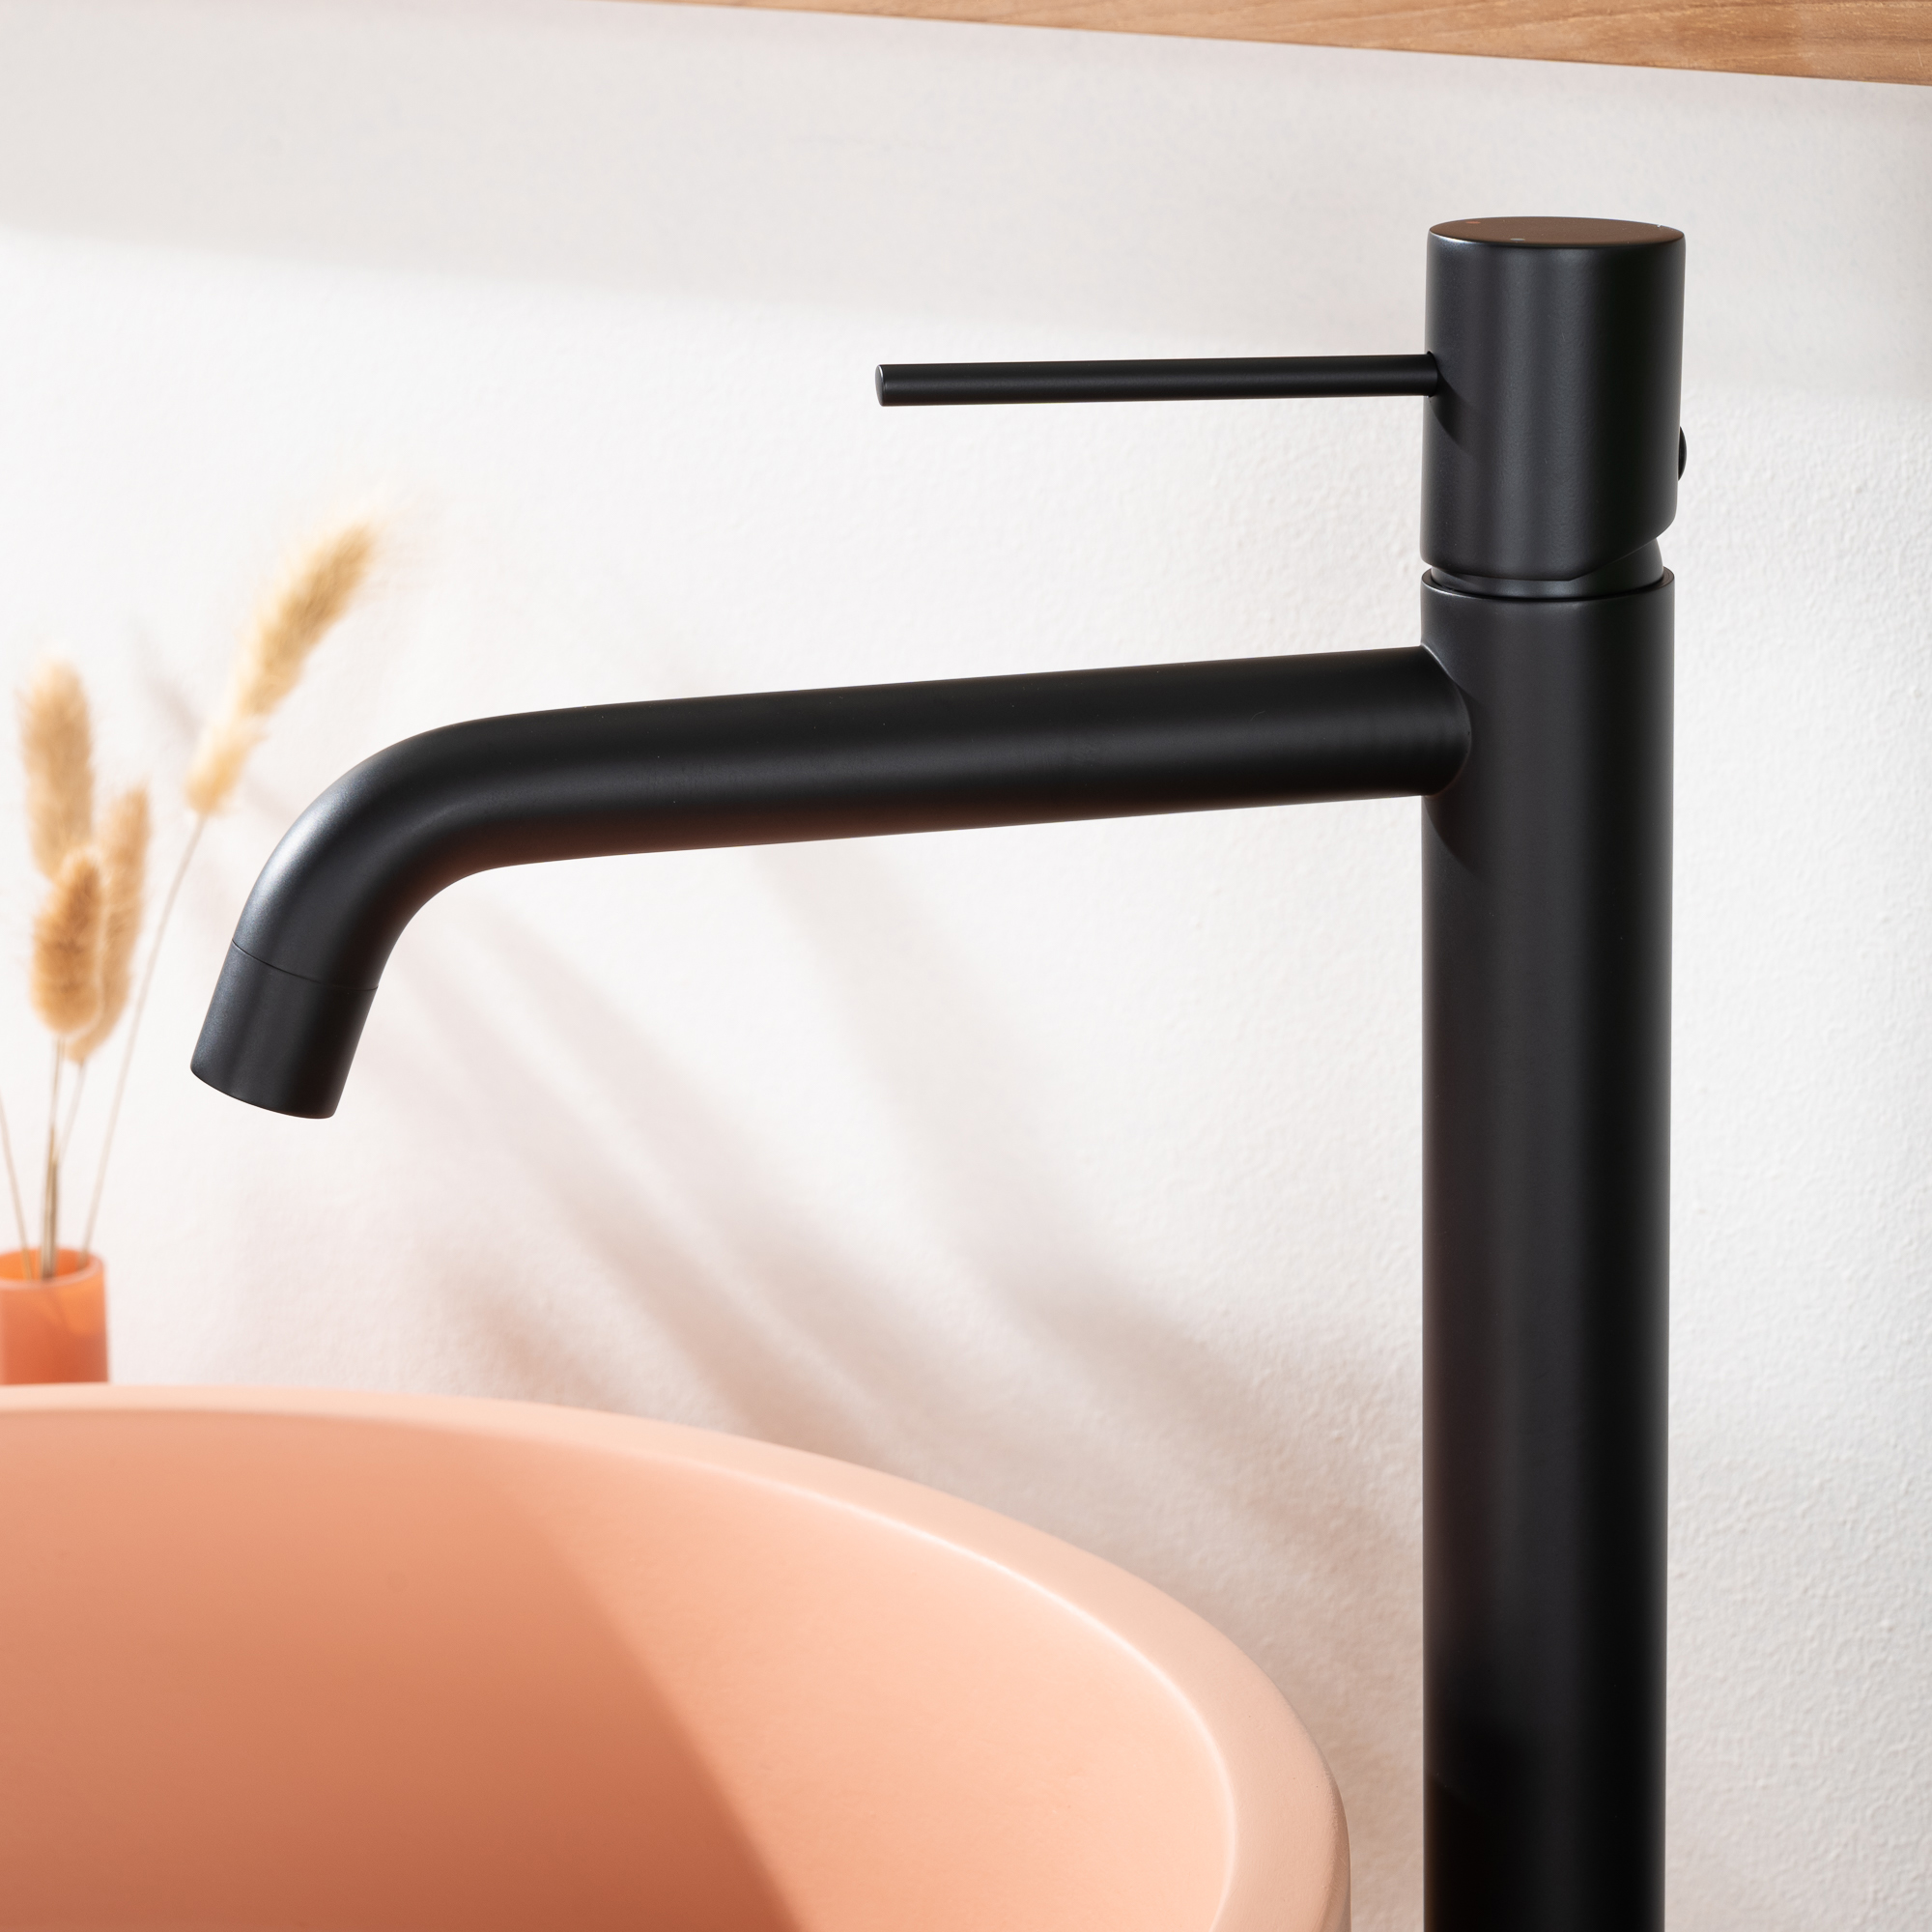 Mitigeur lavabo noir mat qualité robinet salle de bain design moderne